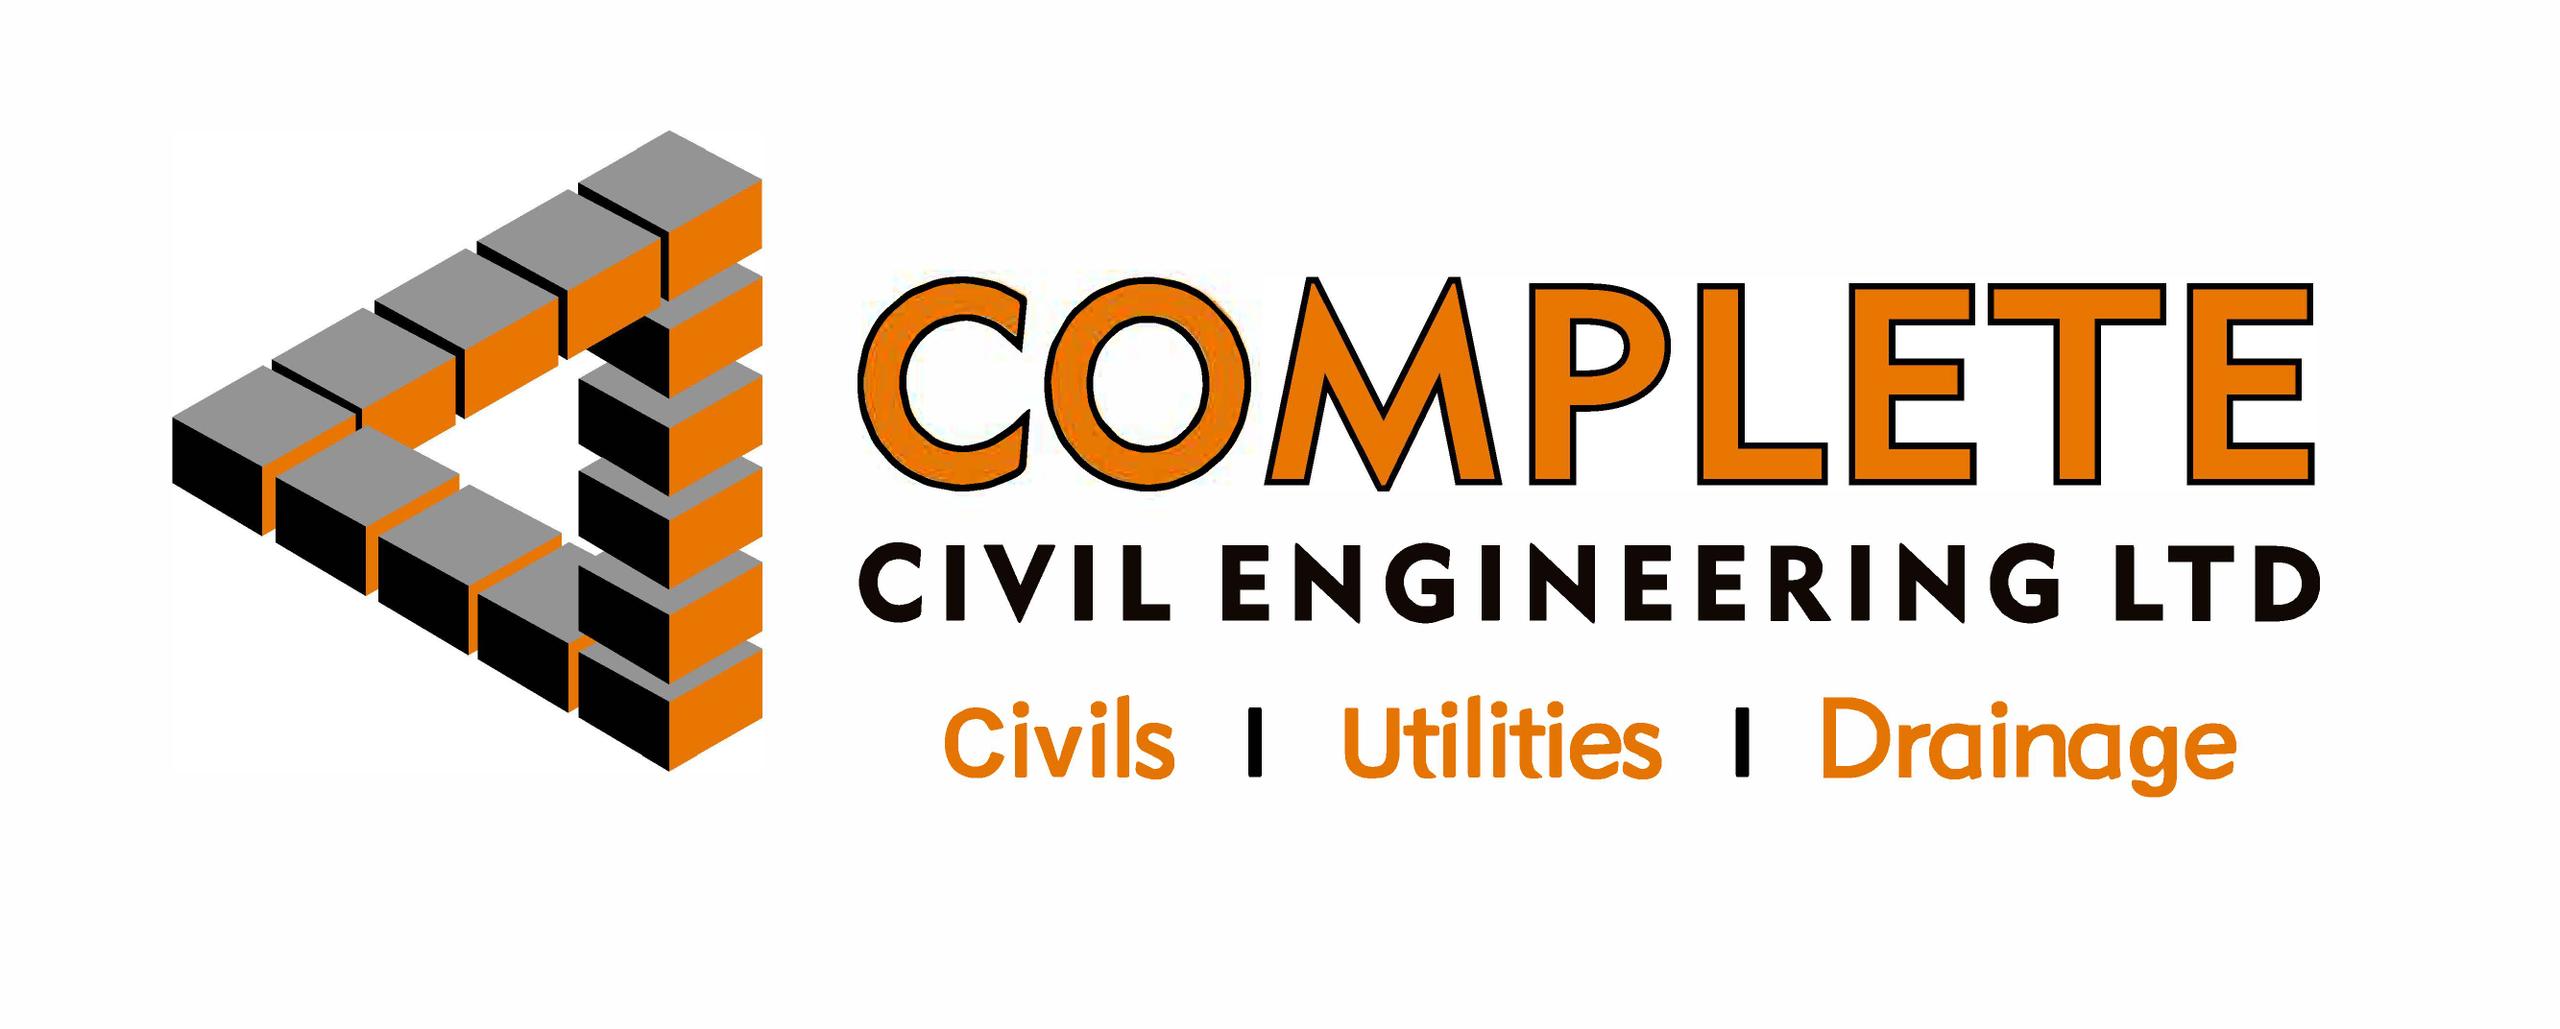 Complete Civil Engineering Ltd